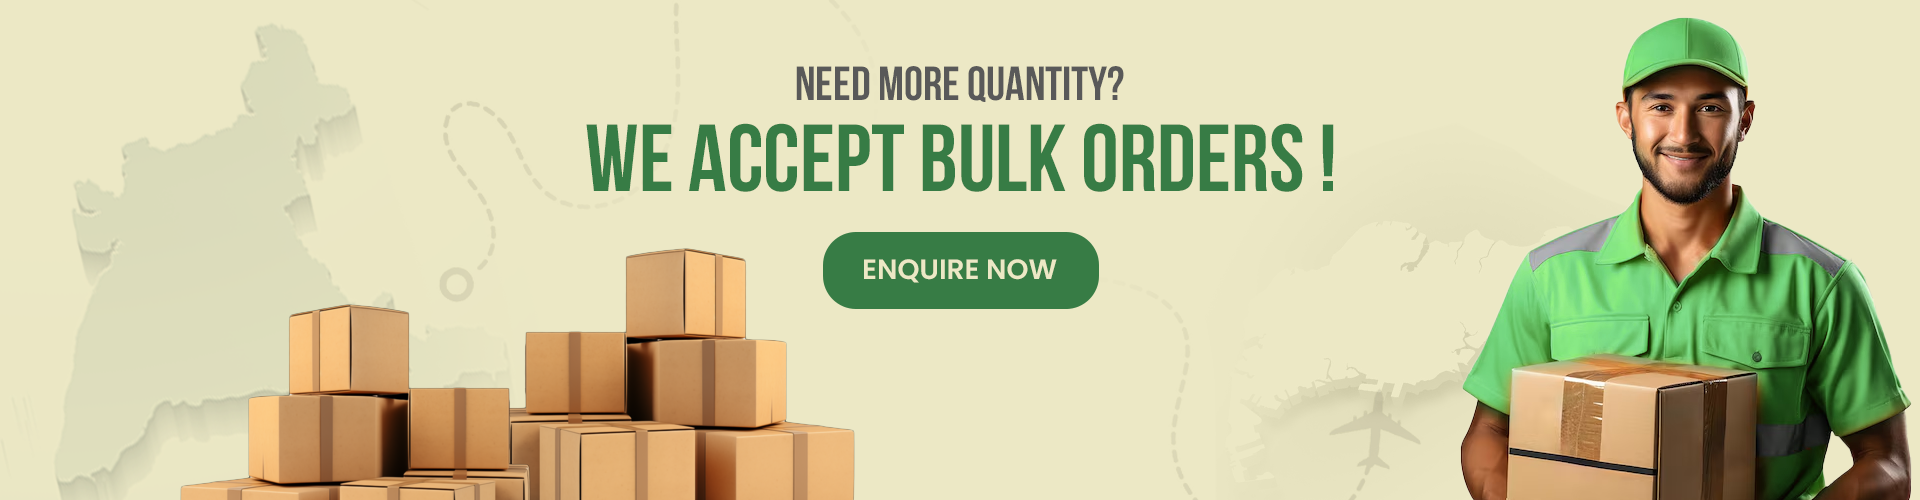 bulk-order-enquiry